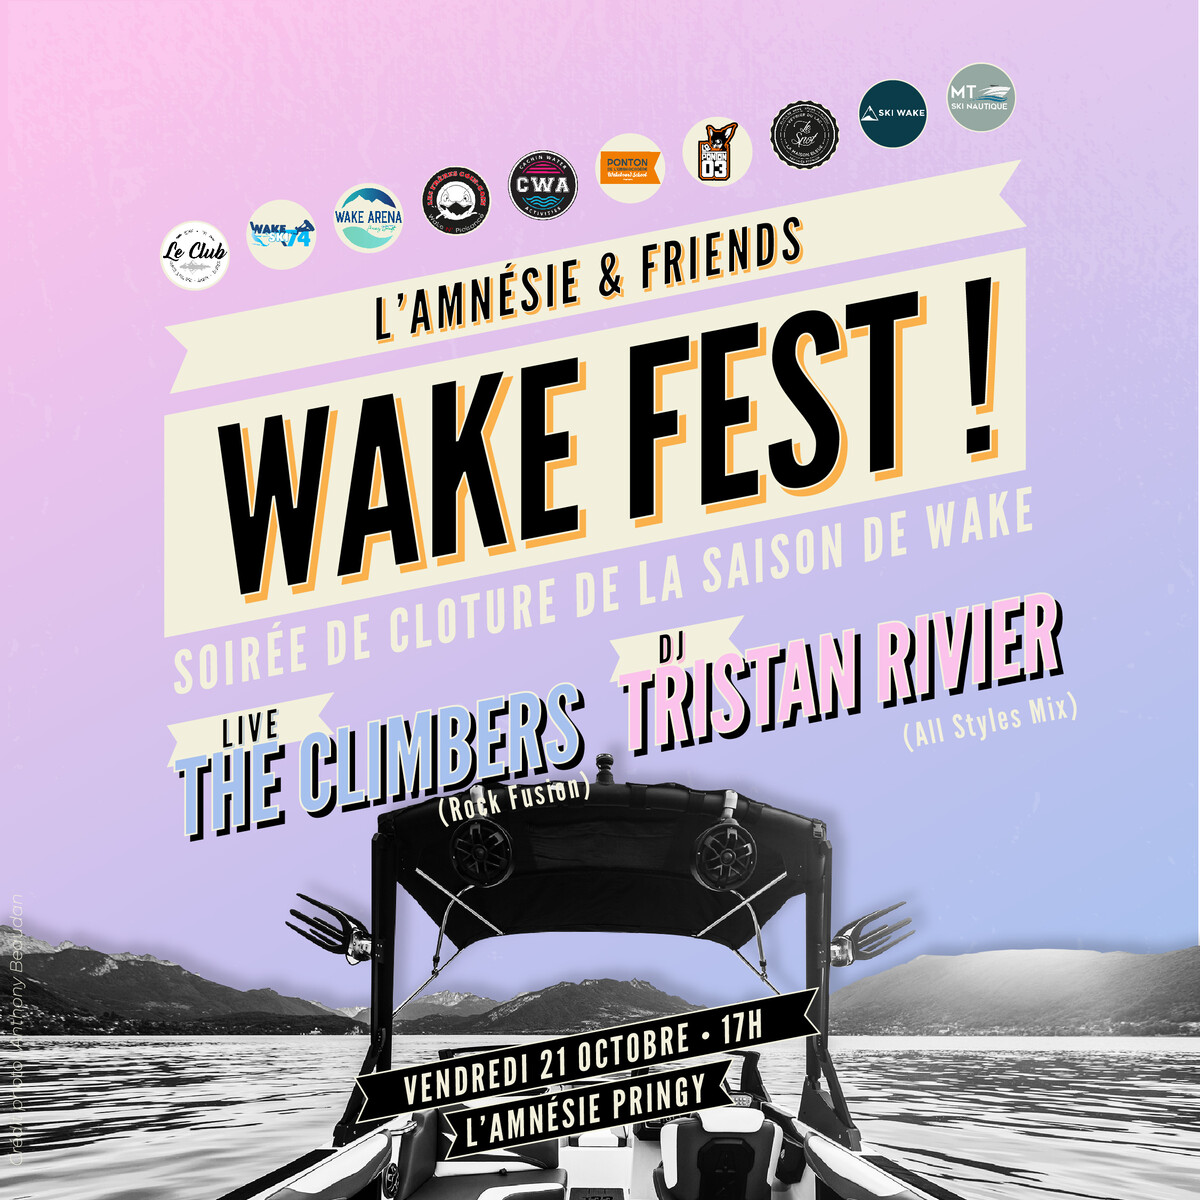 L'Amnésie & Friends Wake Fest ! - l'Amnésie